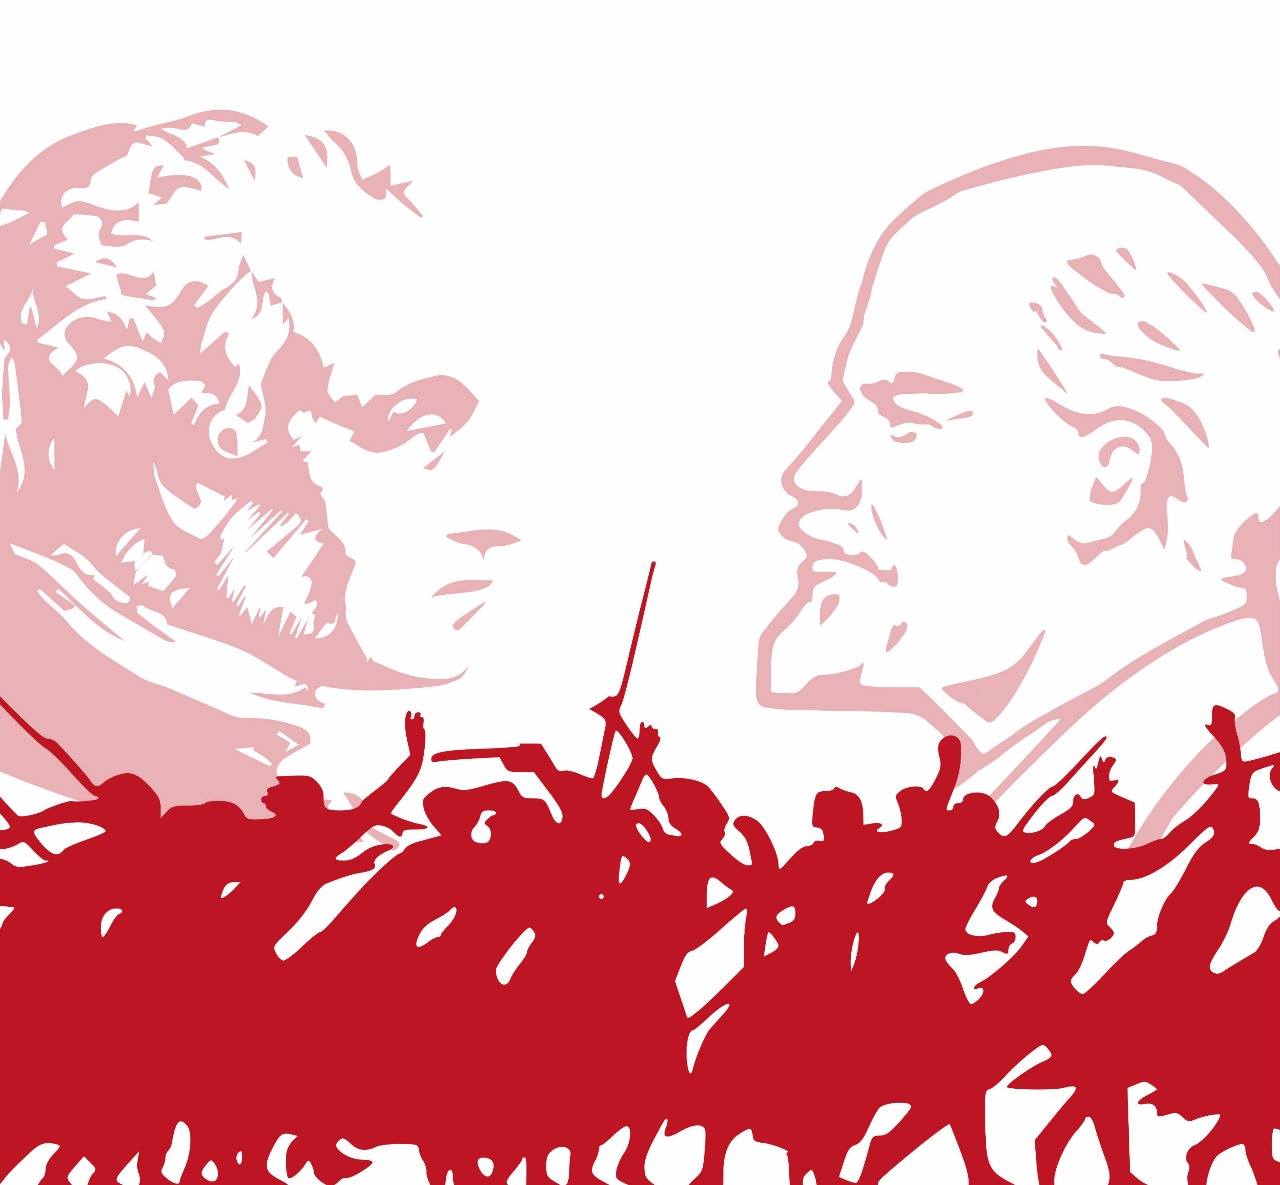 9 и 10 ноября: Конференция «Нет права на восстание. Кант и проблема революции»